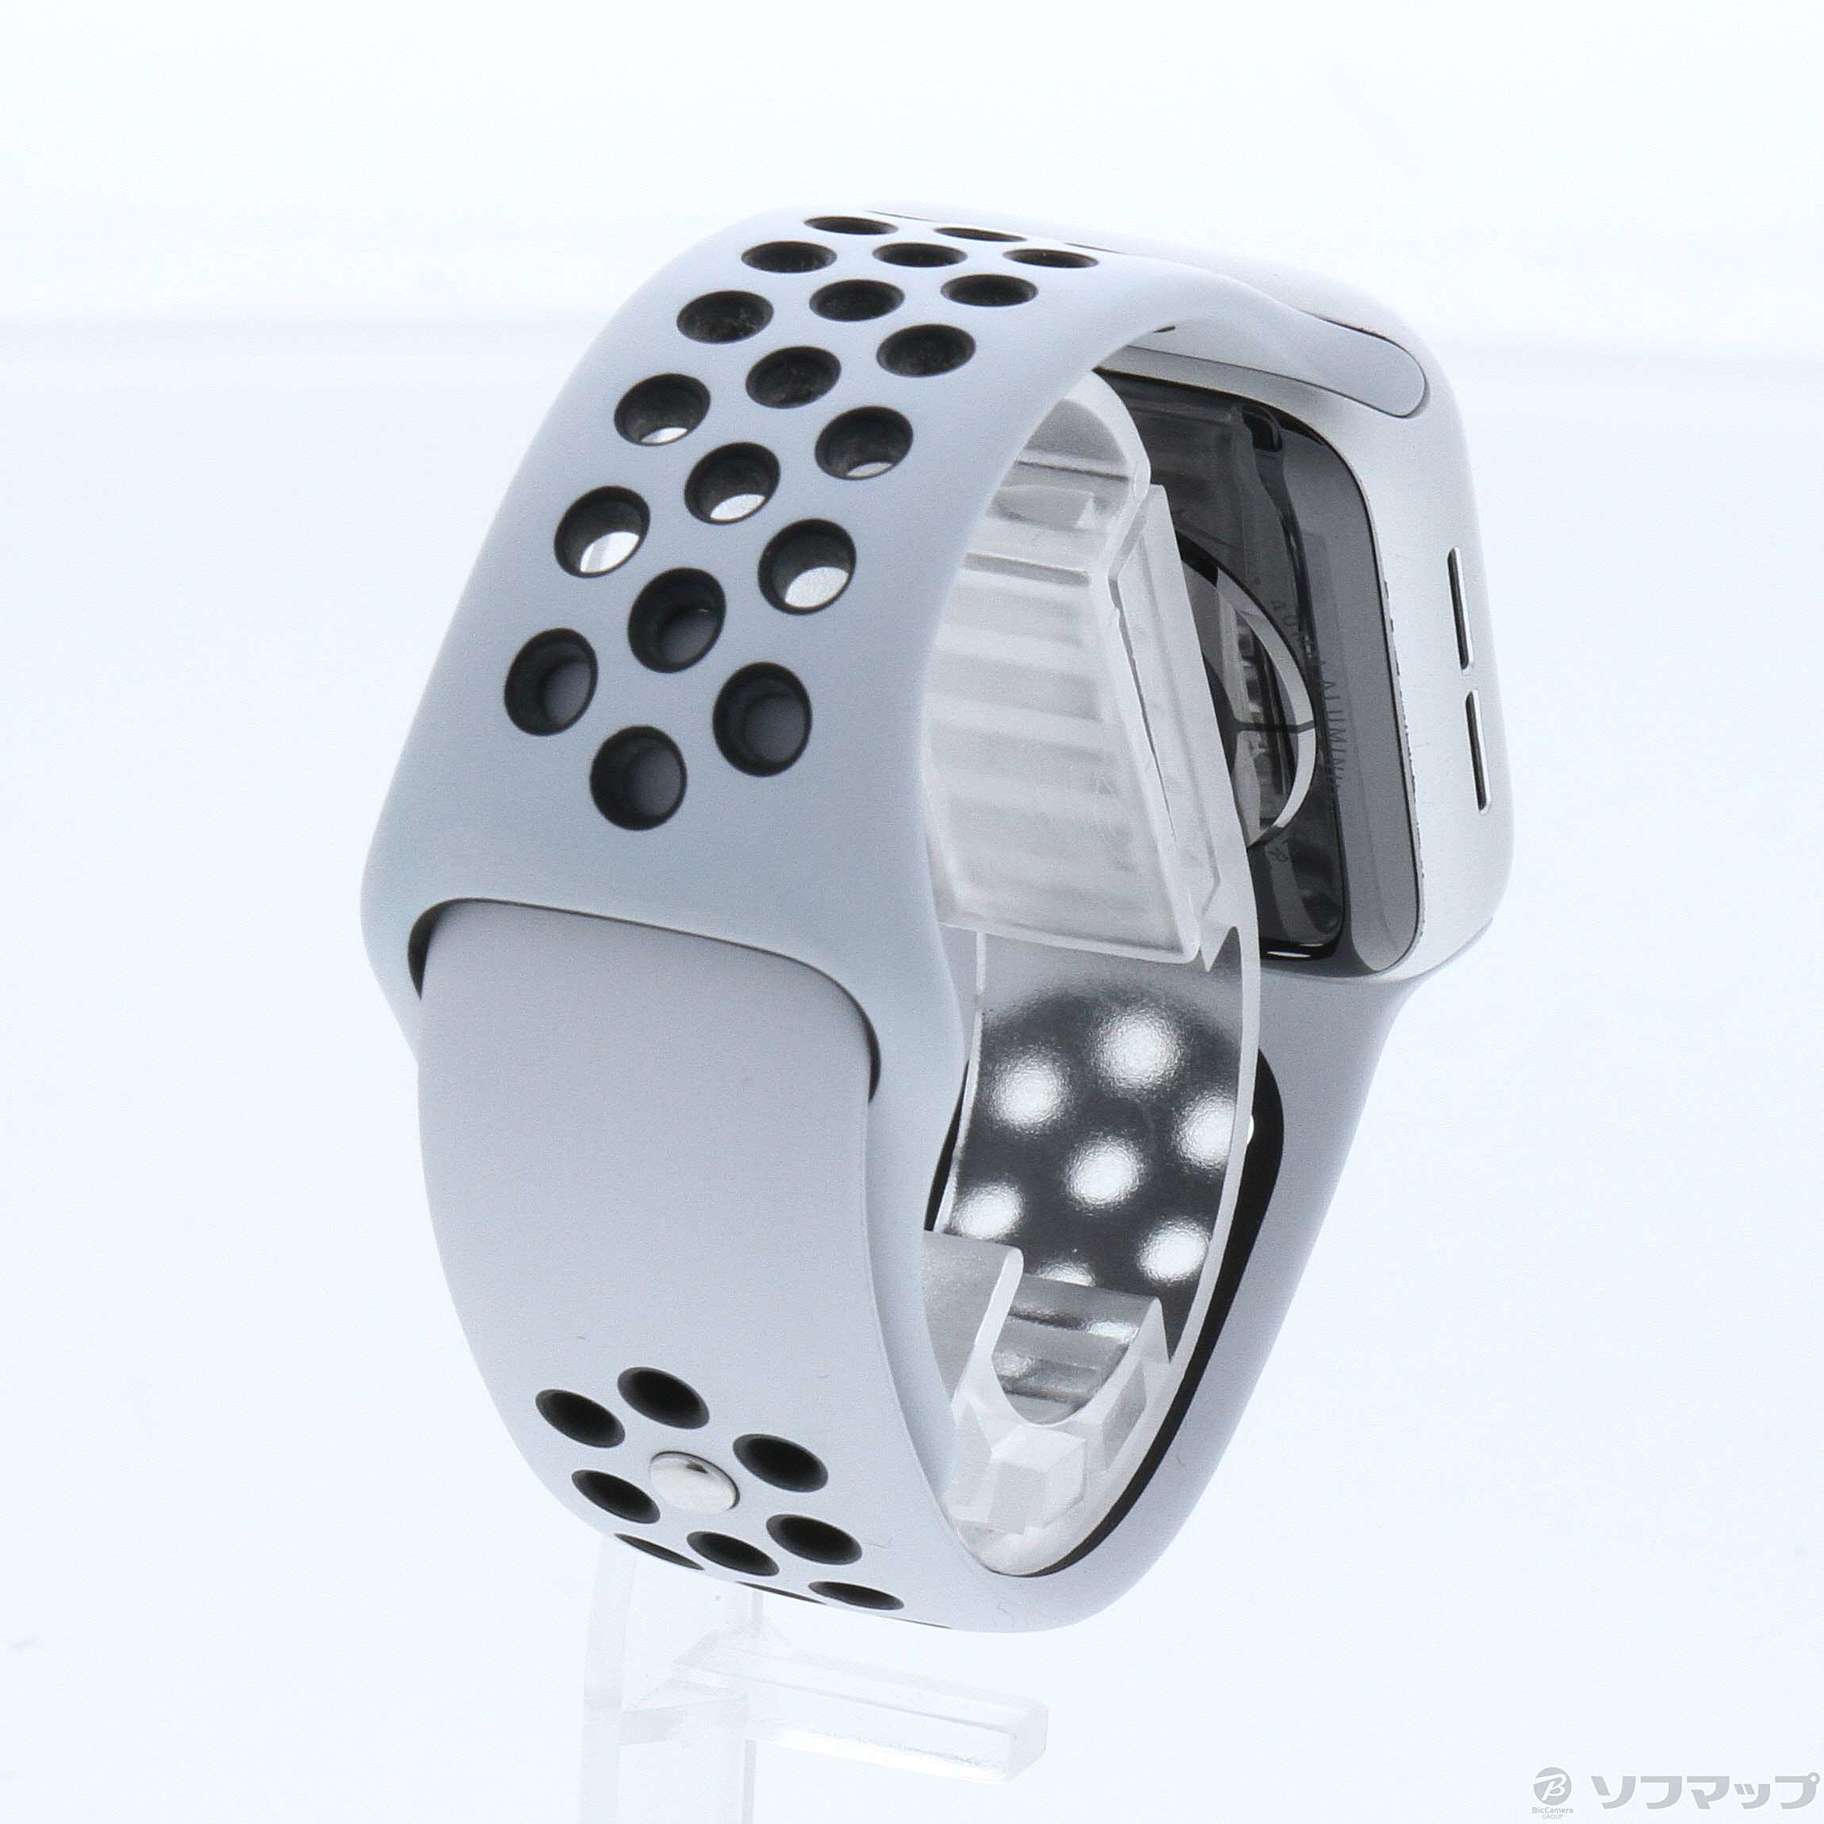 中古】Apple Watch Series 5 Nike GPS 40mm シルバーアルミニウム ...